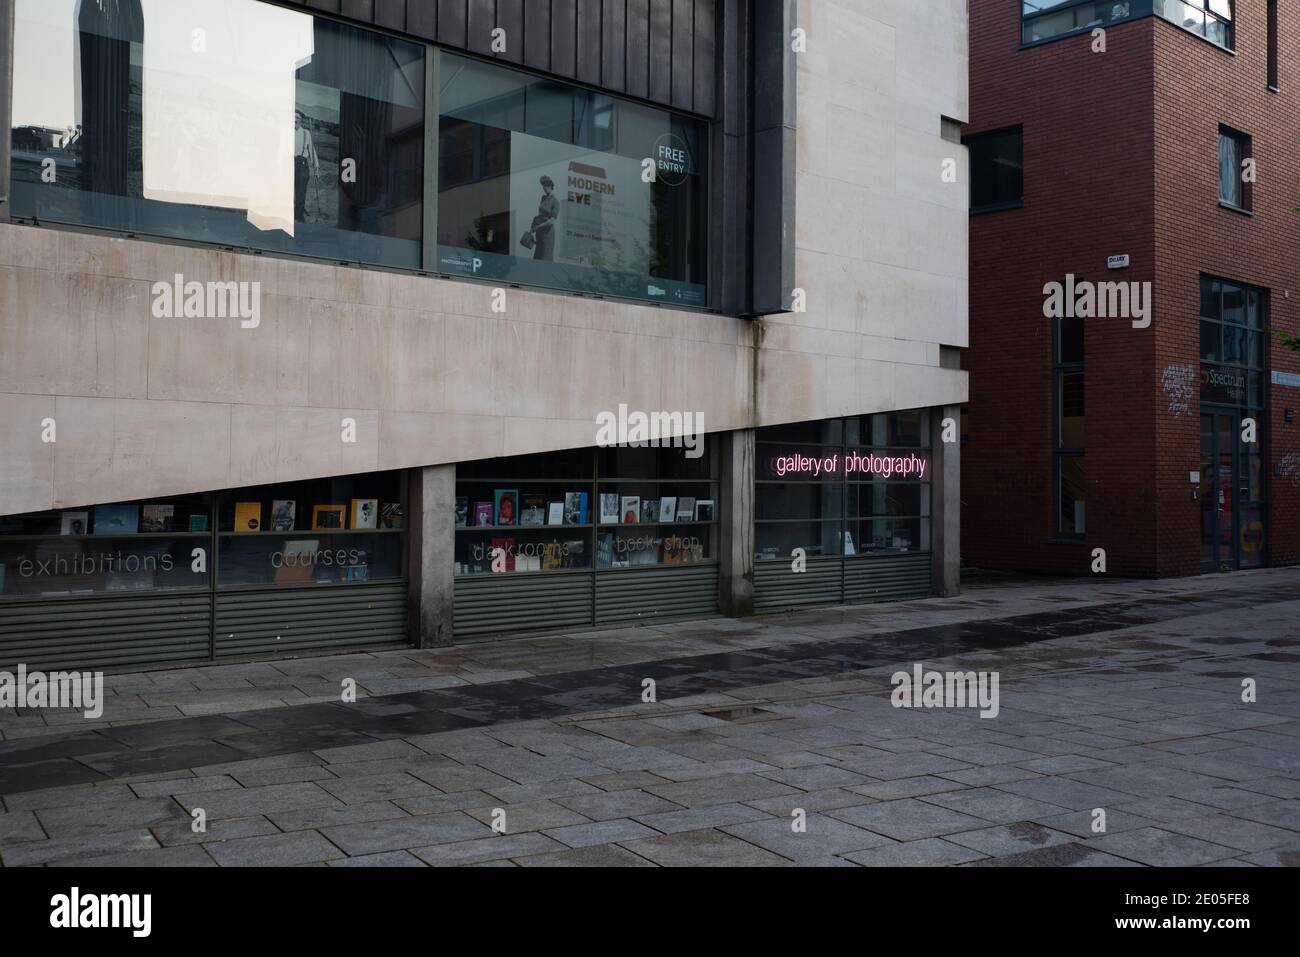 Die Galerie der Fotografie in Dublin, Irland. Stockfoto